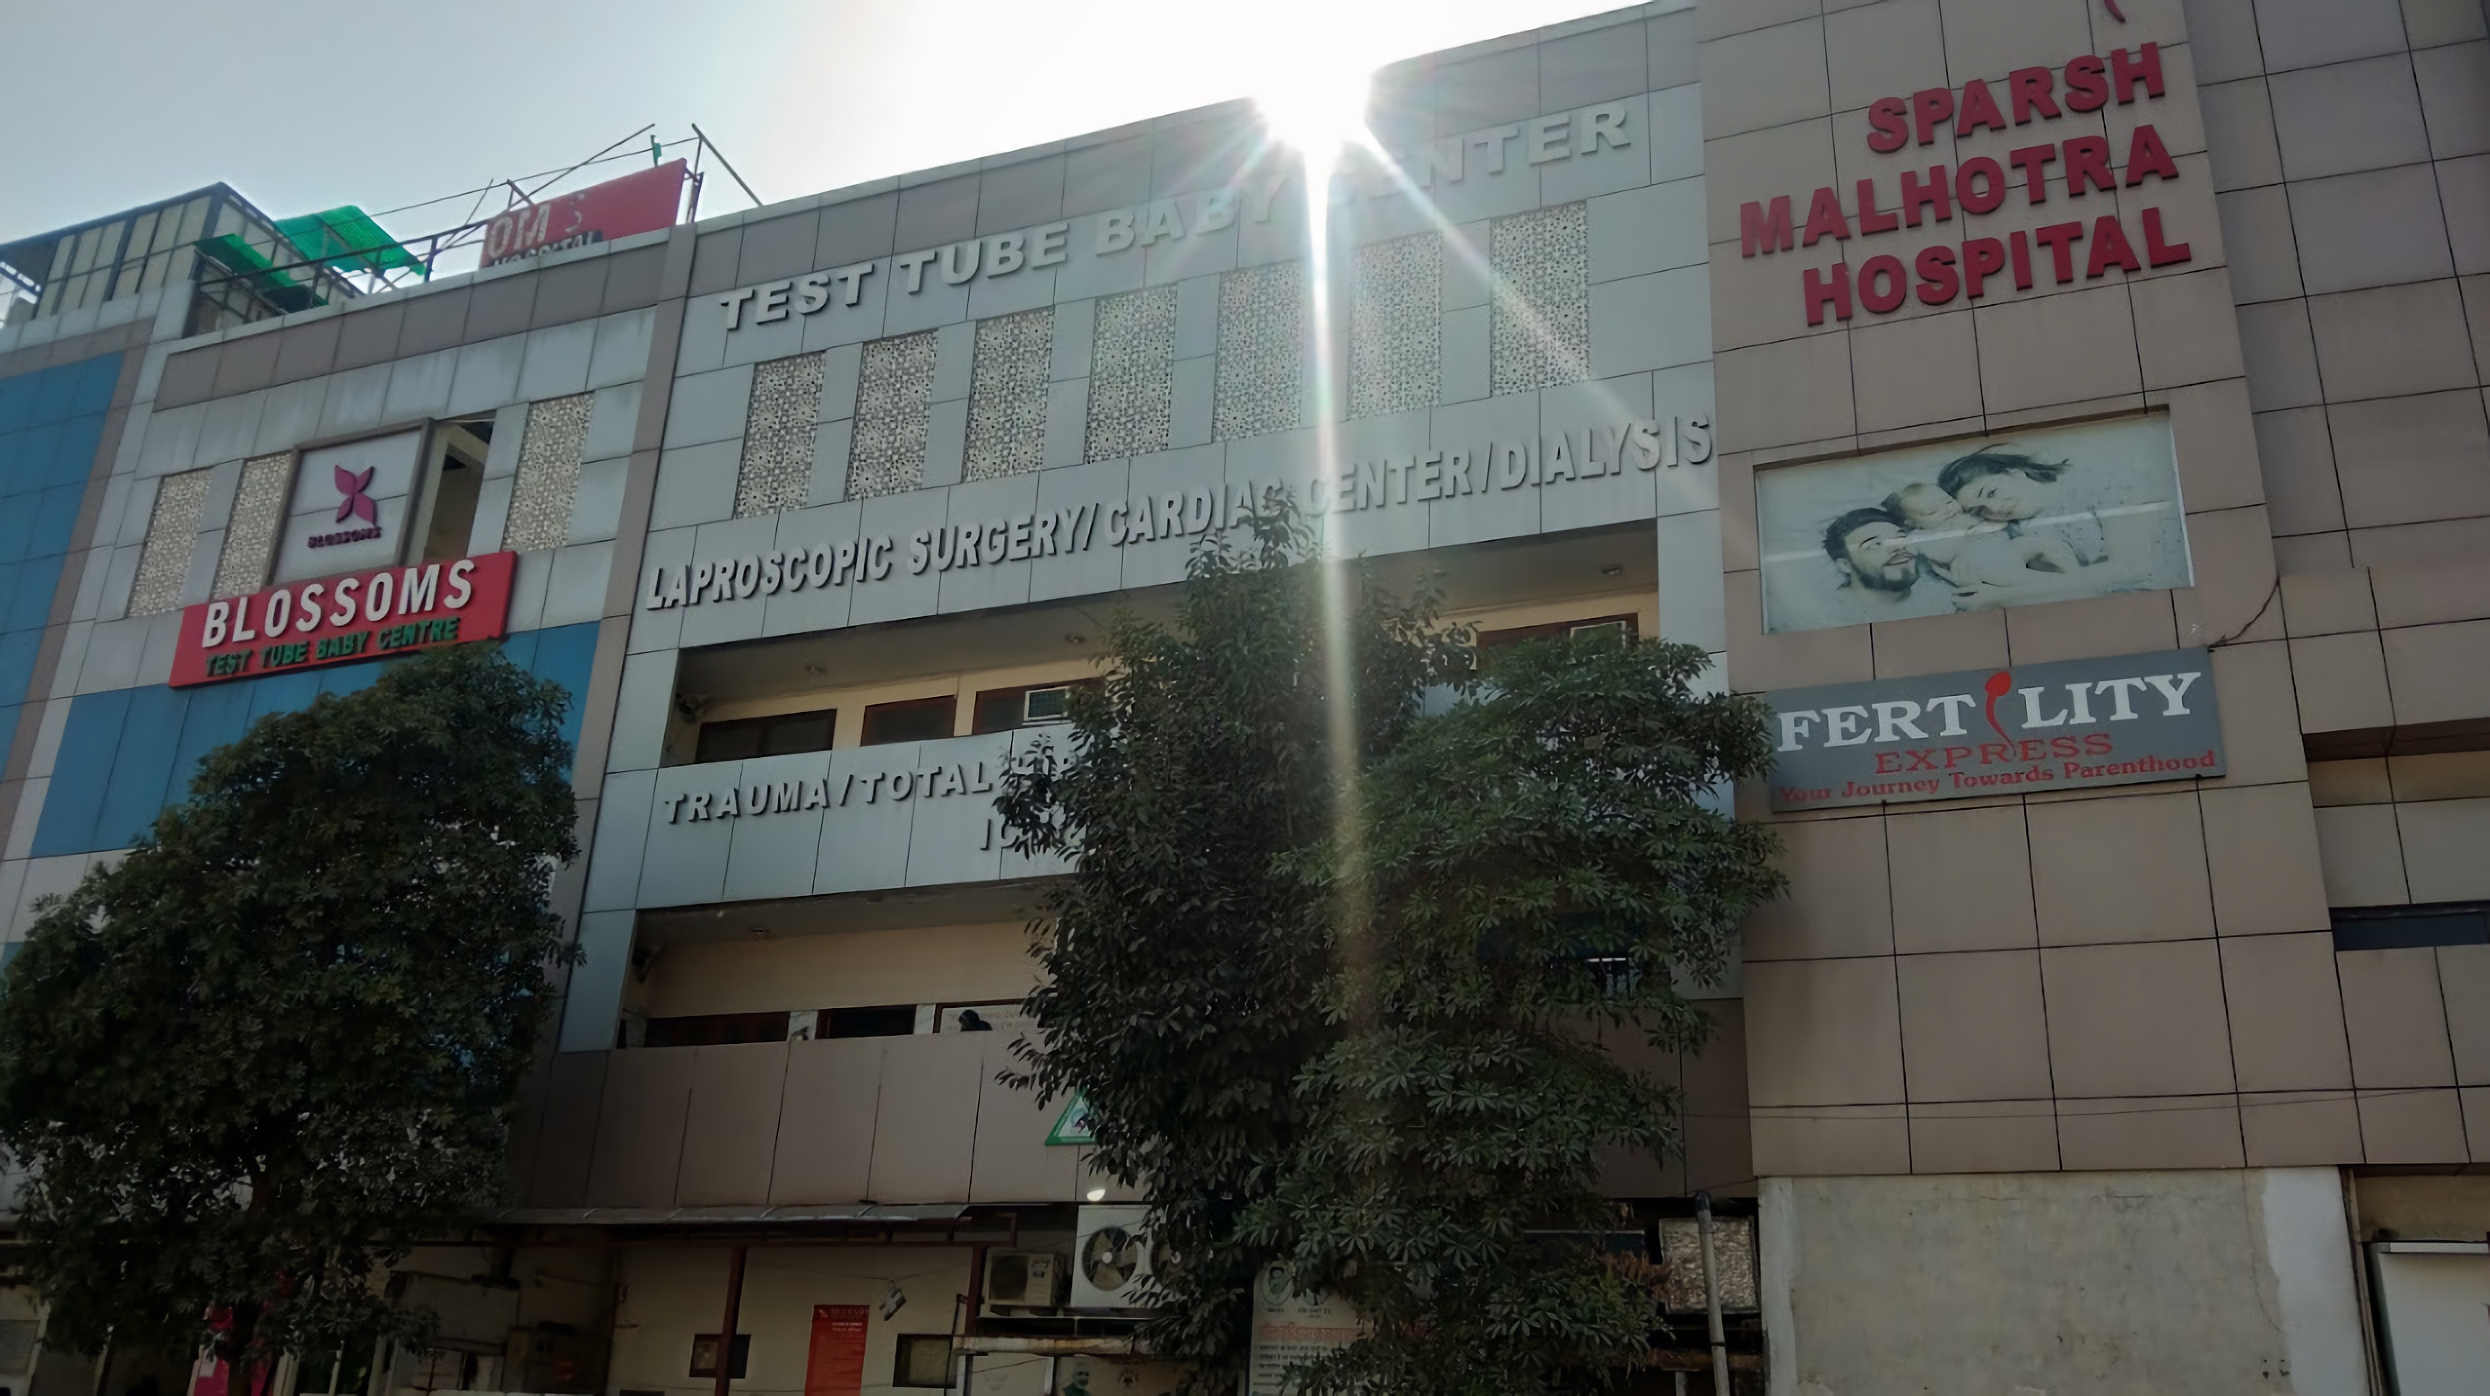 Sparsh Malhotra Hospital